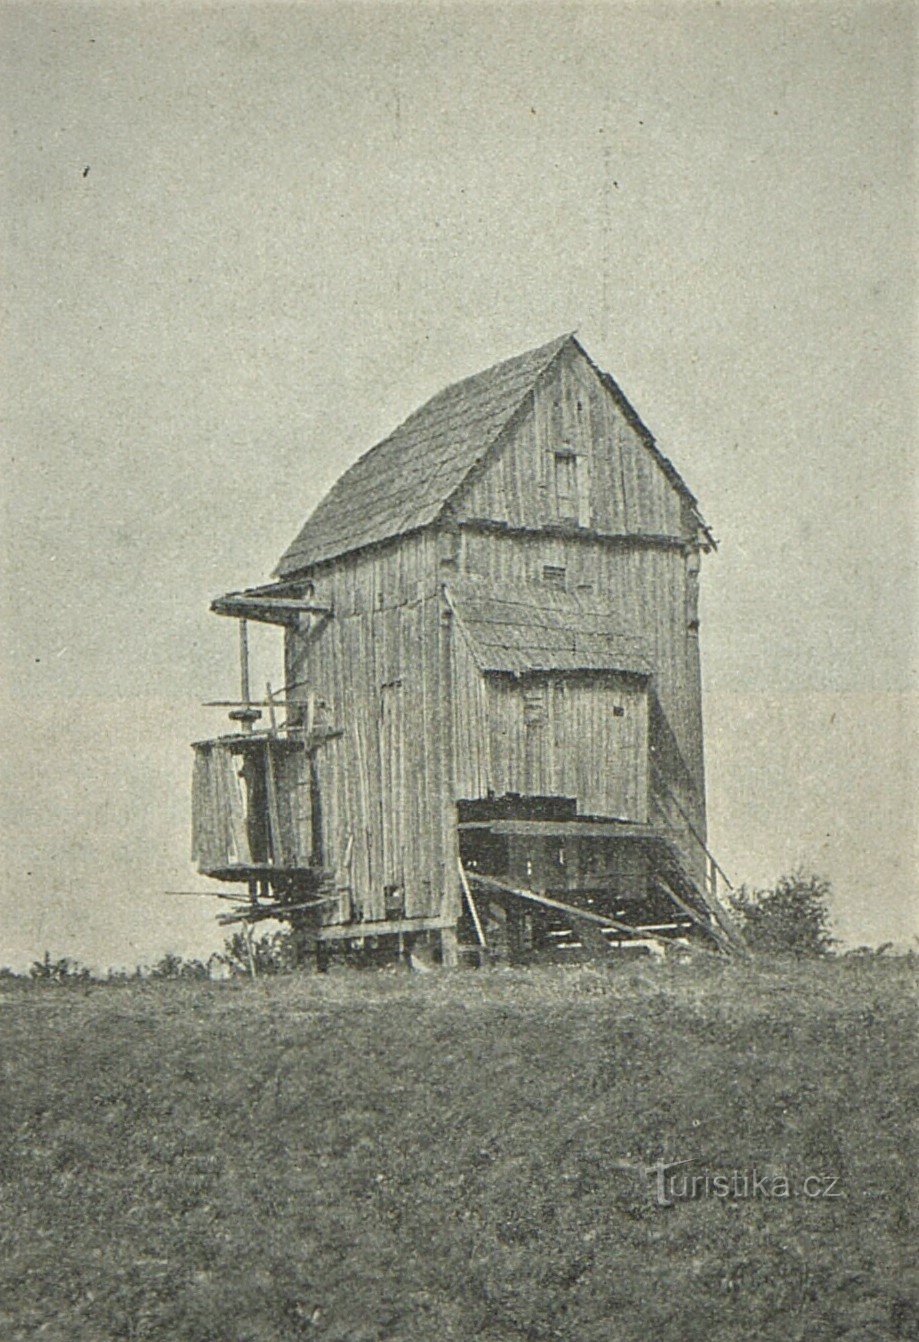 Foto af vindmøllen i Doblnice fra 1909